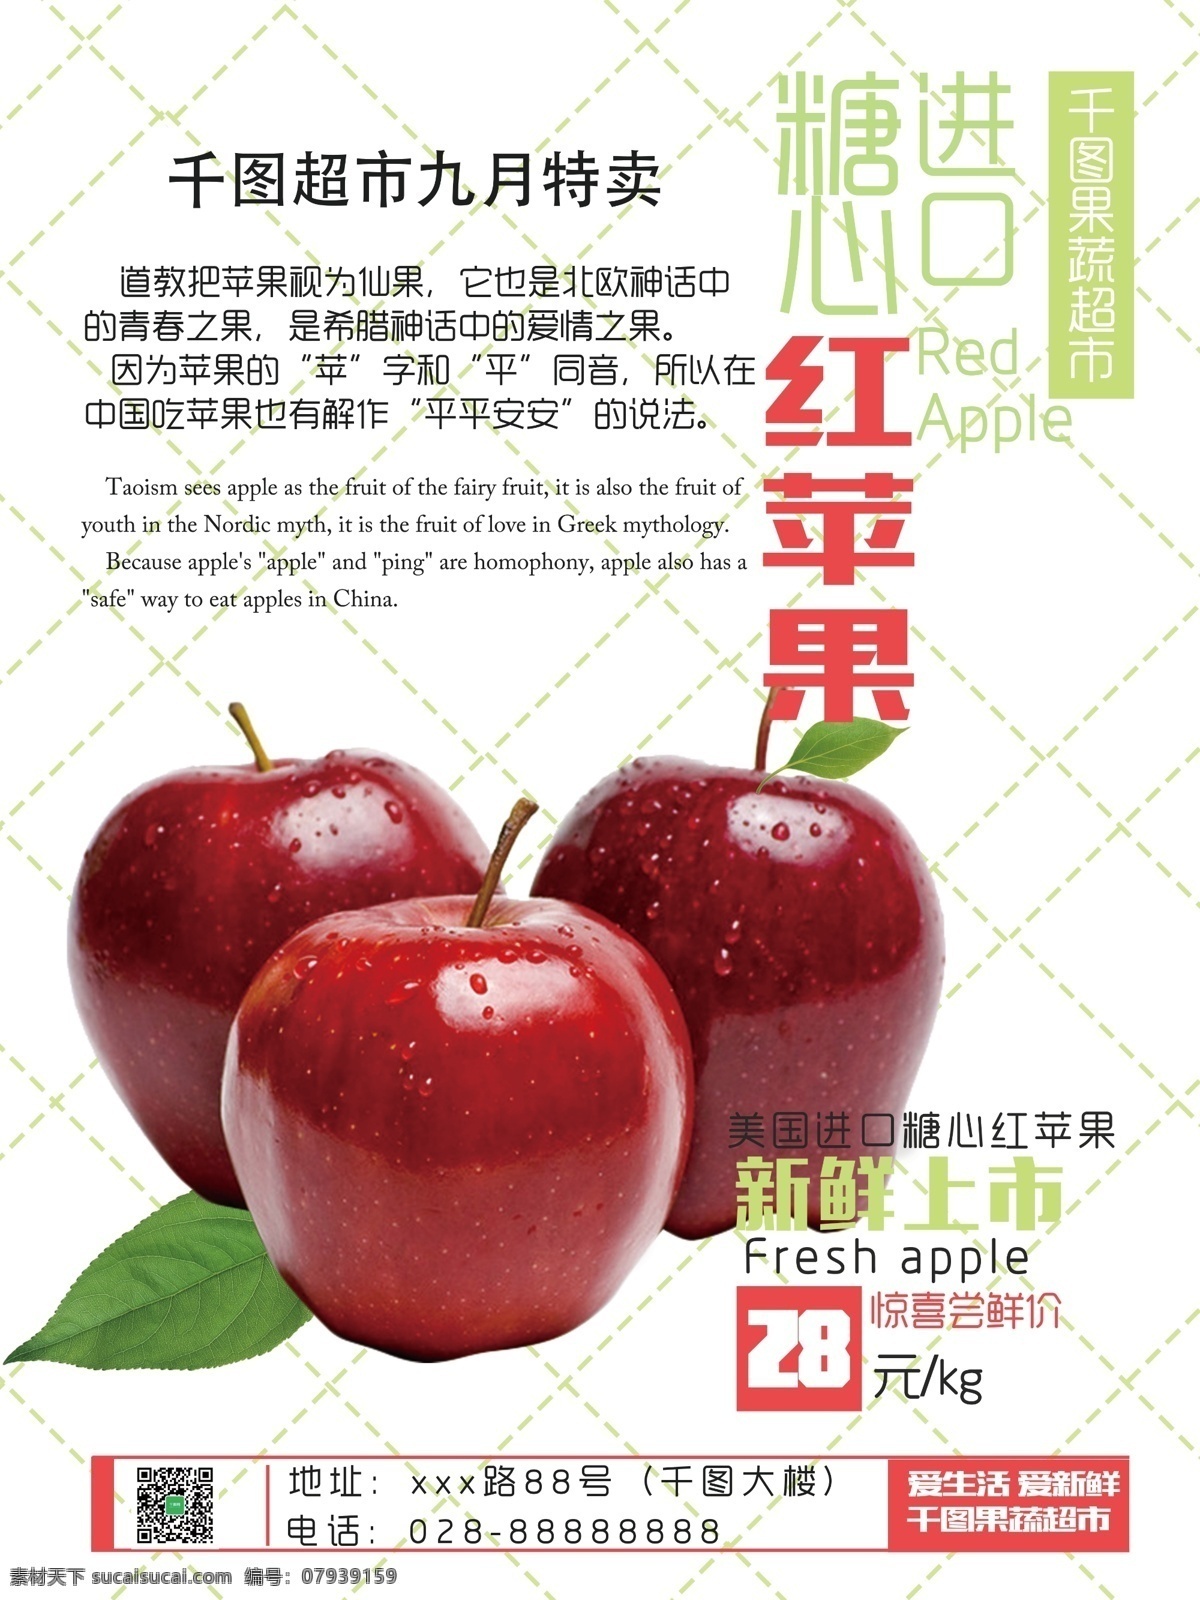 红色 小 清新 超市 九月 水果 苹果 促销 海报 小清新 网格背景 红绿色搭配 红苹果